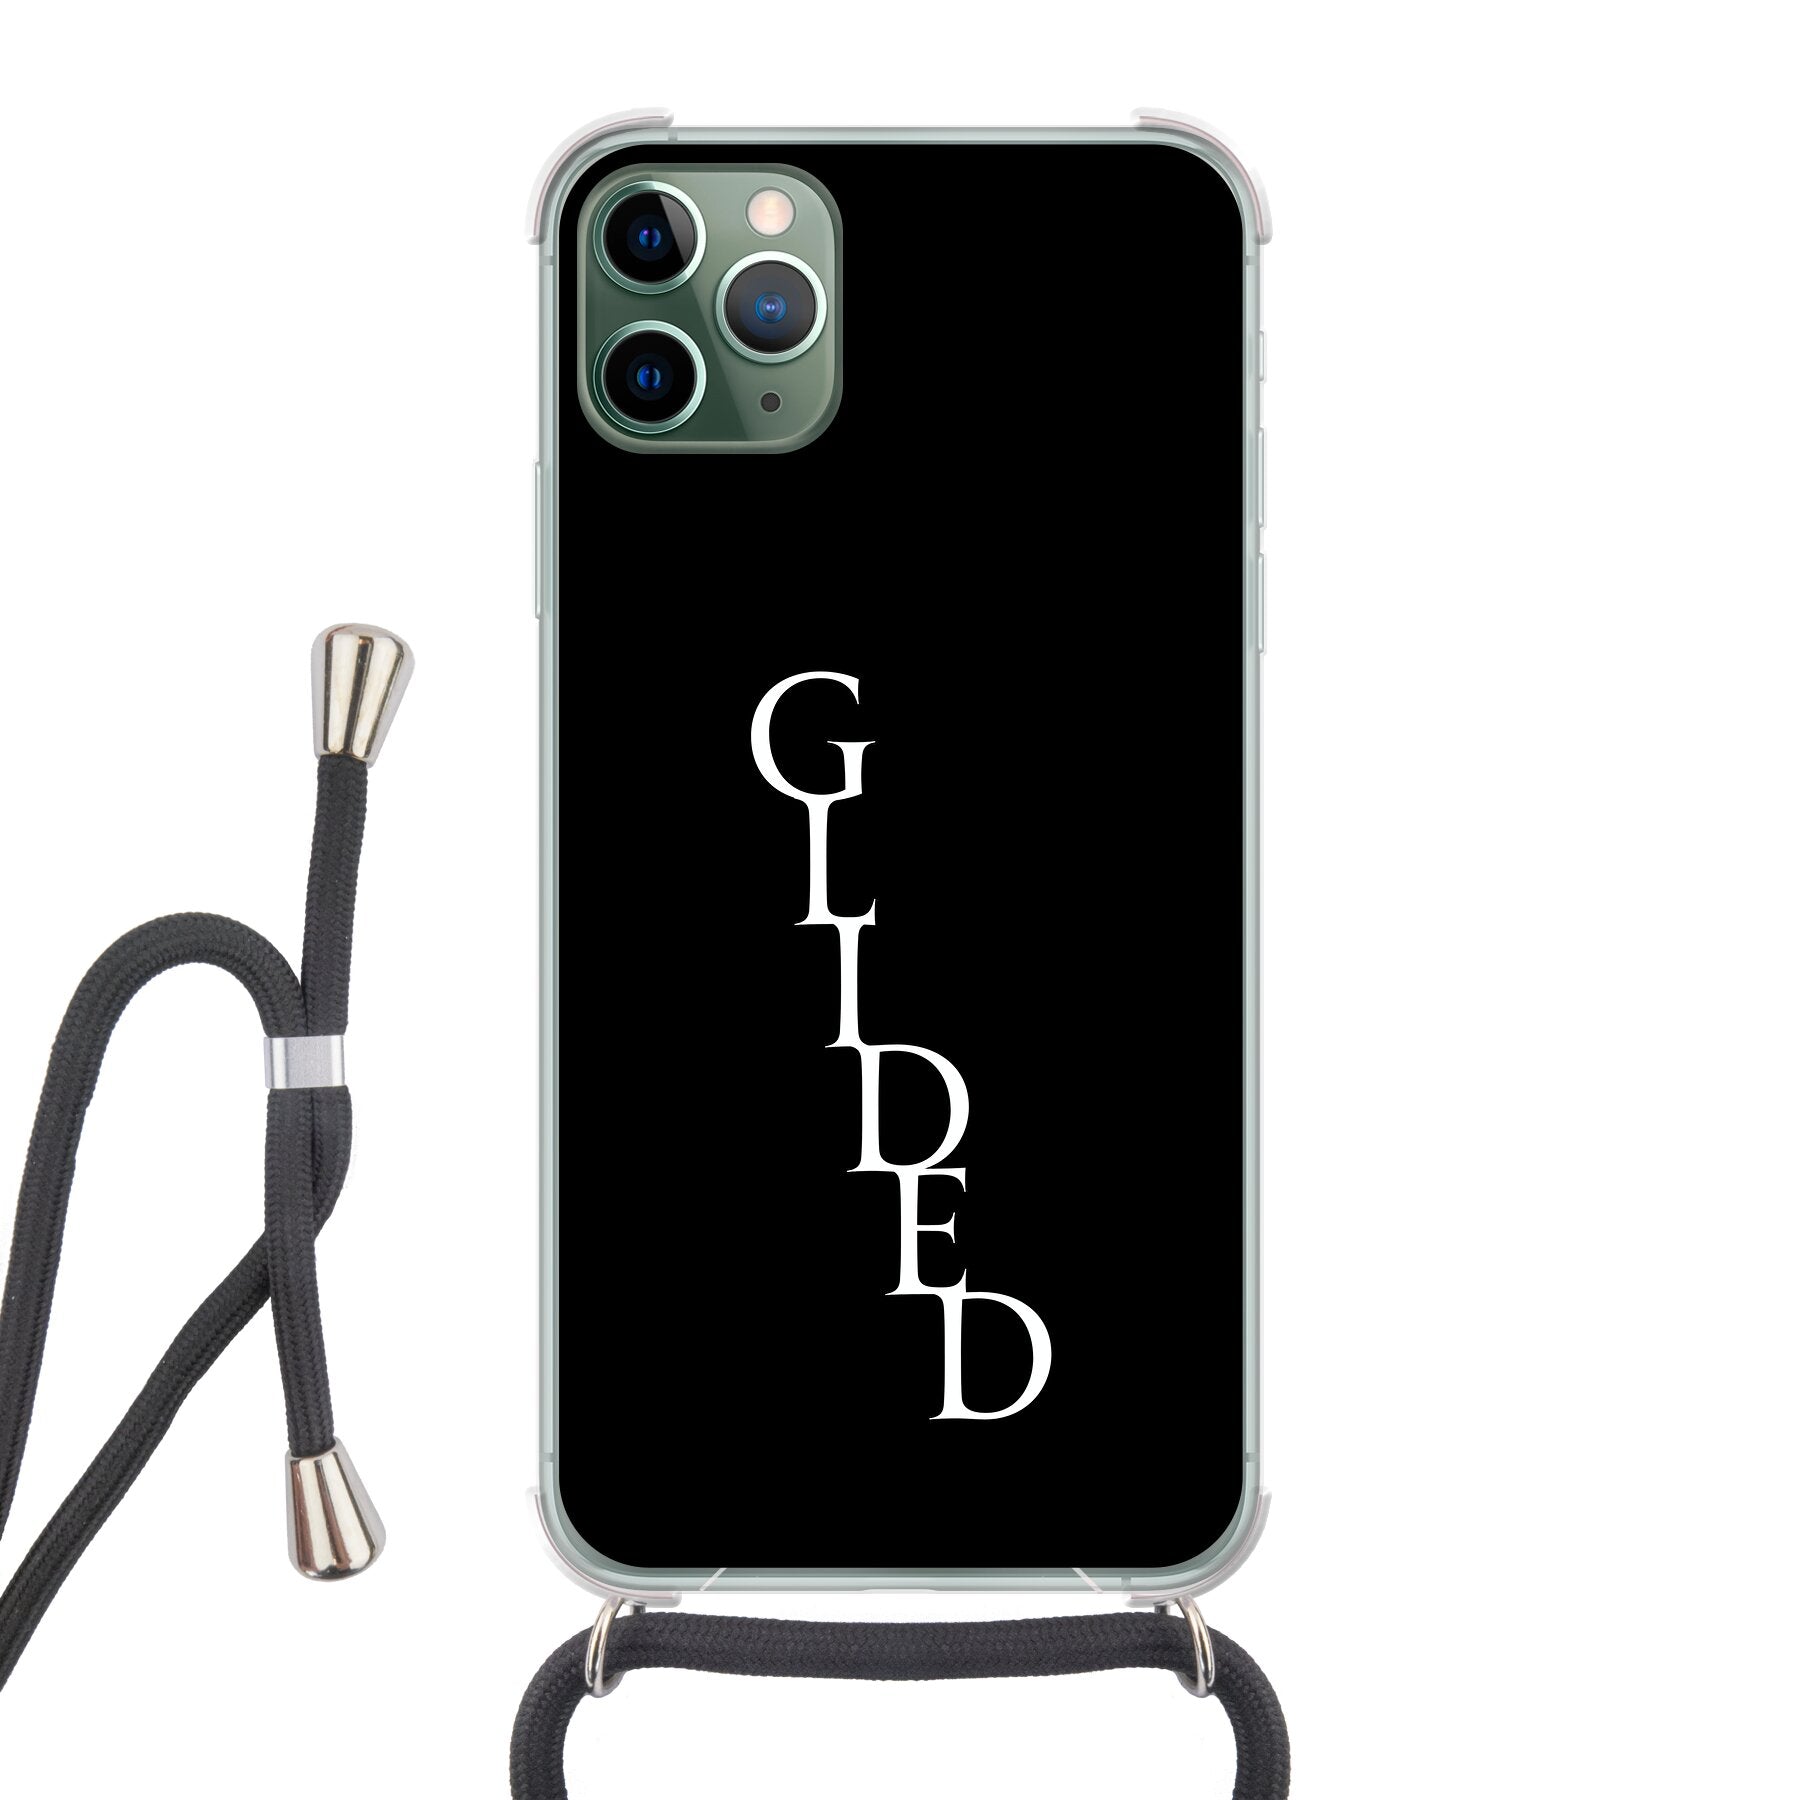 Premium Glided Exclusiv - iPhone 11 Pro Max Handyhülle - Hard Case von Glided